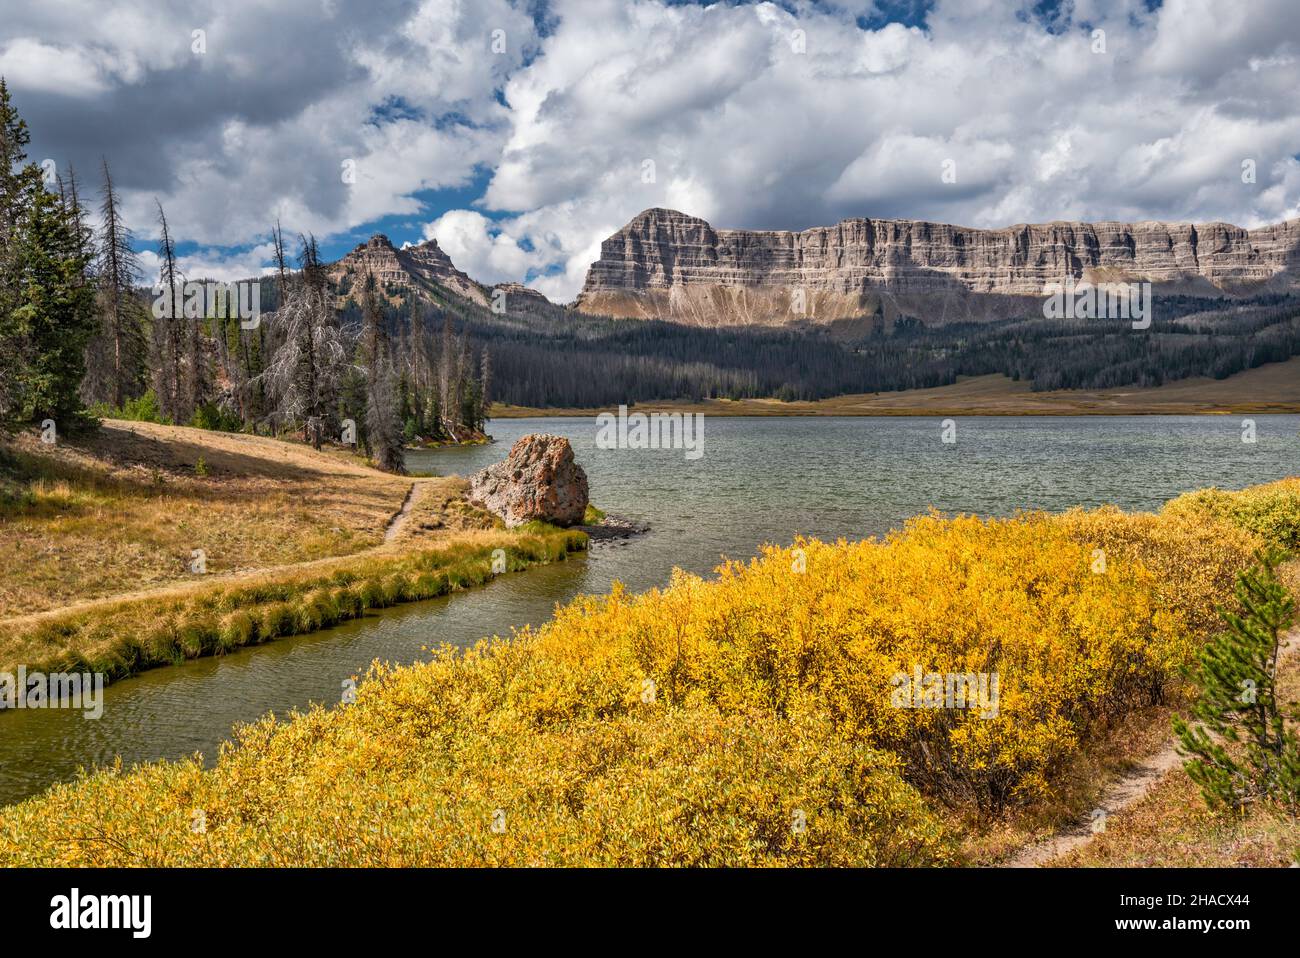 Falaises de breccia, pic de Sublette à gauche, buissons de couleur automnale au lac Brooks, chaîne d'Absaroka, montagnes Rocheuses, forêt nationale de Shoshone, Wyoming,ÉTATS-UNIS Banque D'Images